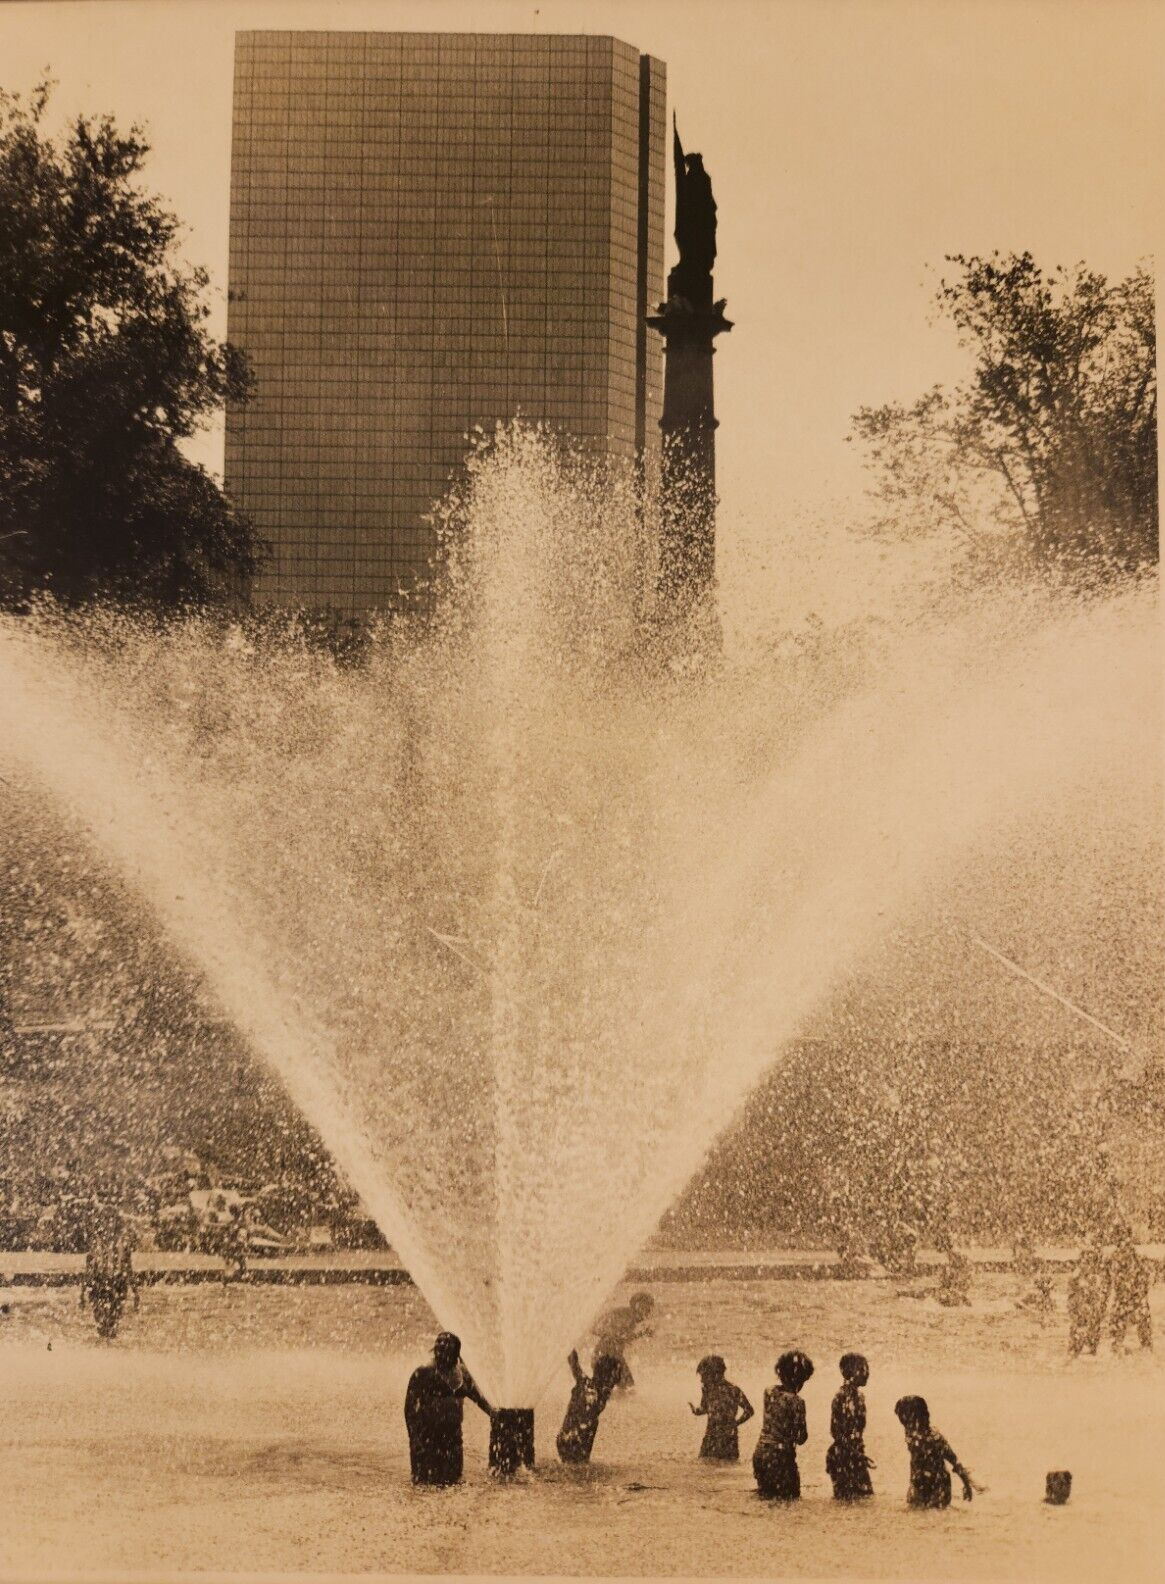 Vintage City Children Splashing In Public Fountain c. 1950s Original 8X10 Photo